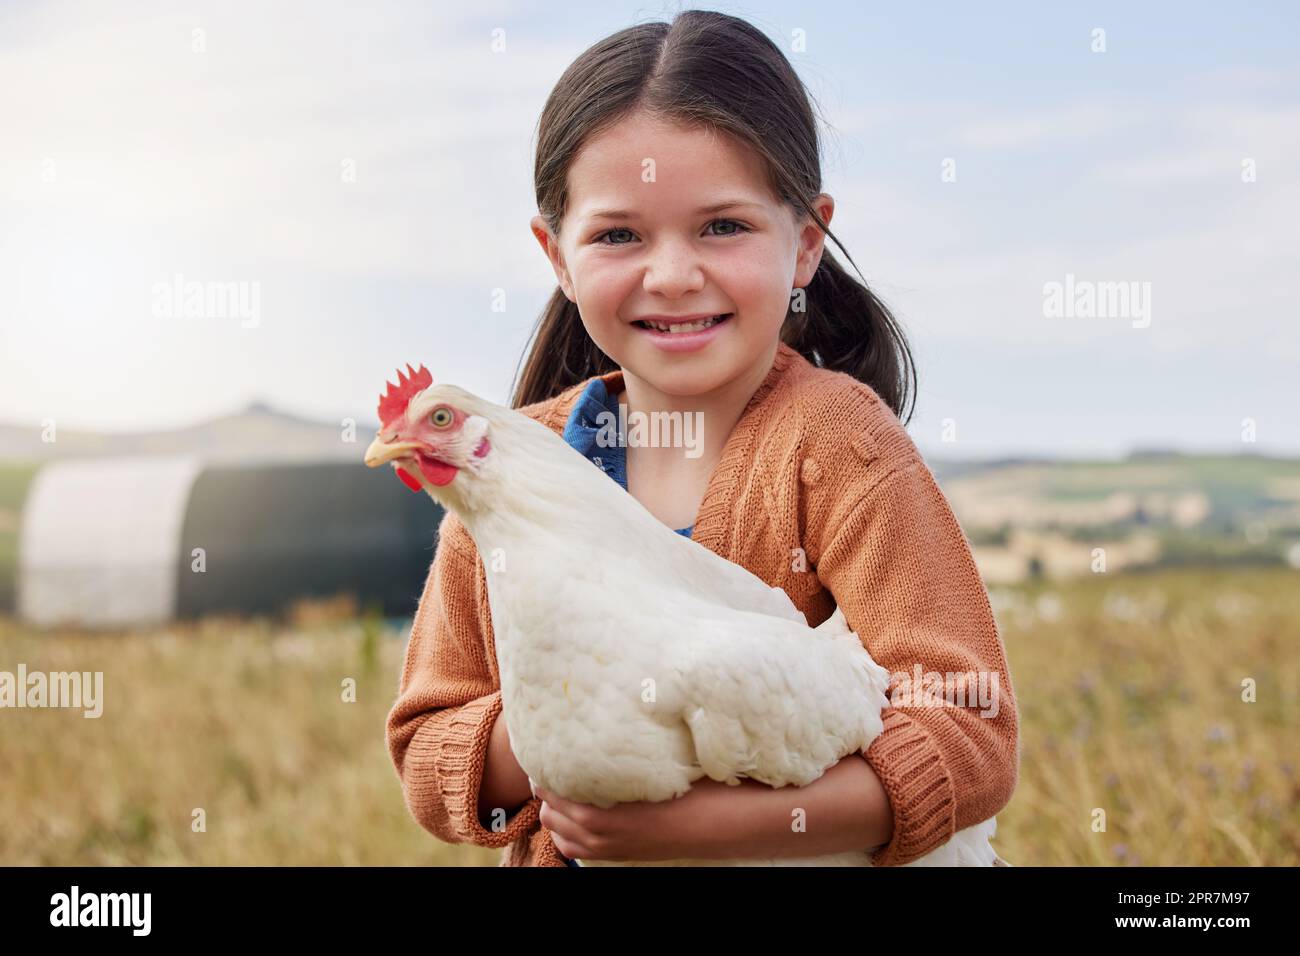 Ich helfe, die Tiere auf unserem Bauernhof zu kümmern. Ein entzückendes kleines Mädchen hält ein Huhn auf einem Bauernhof. Stockfoto